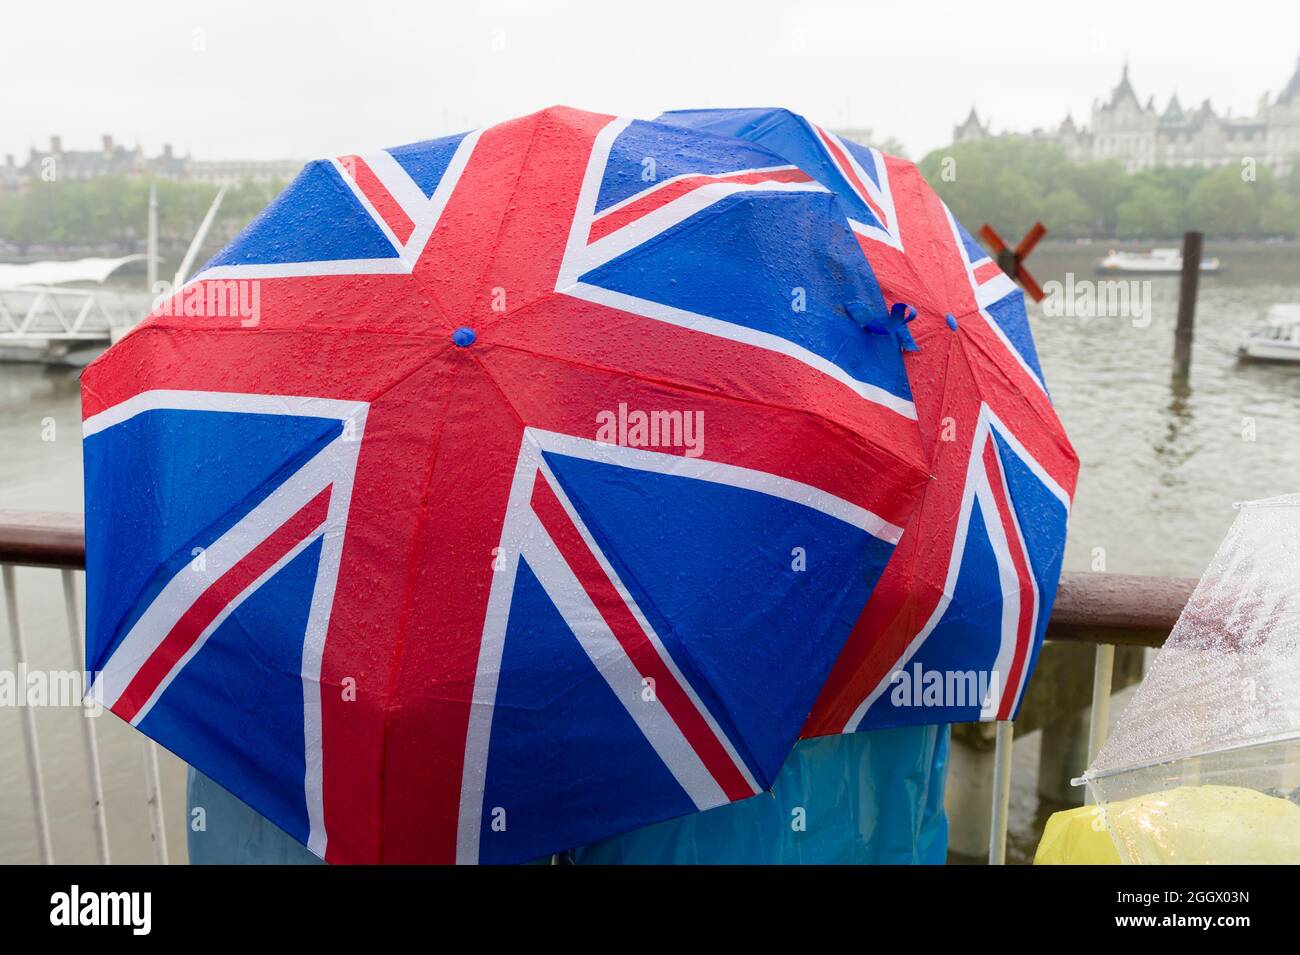 Zuschauer warten unter den Regenschirmen von Union Jack im Regen auf den Thames Diamond Jubilee Pageant, der am Londoner South Bank vorbeikommt. Der Pageant bestand aus Hunderten von Booten, die von der Battersea Bridge zur Tower Bridge segelten, um die 60 Jahre auf dem Thron von Königin Elizabeth II zu feiern. Millionen von Menschen säumten die Ufer der Themse, um das Spektakel zu beobachten. South Bank, London, Großbritannien. 3 Juni 2012 Stockfoto